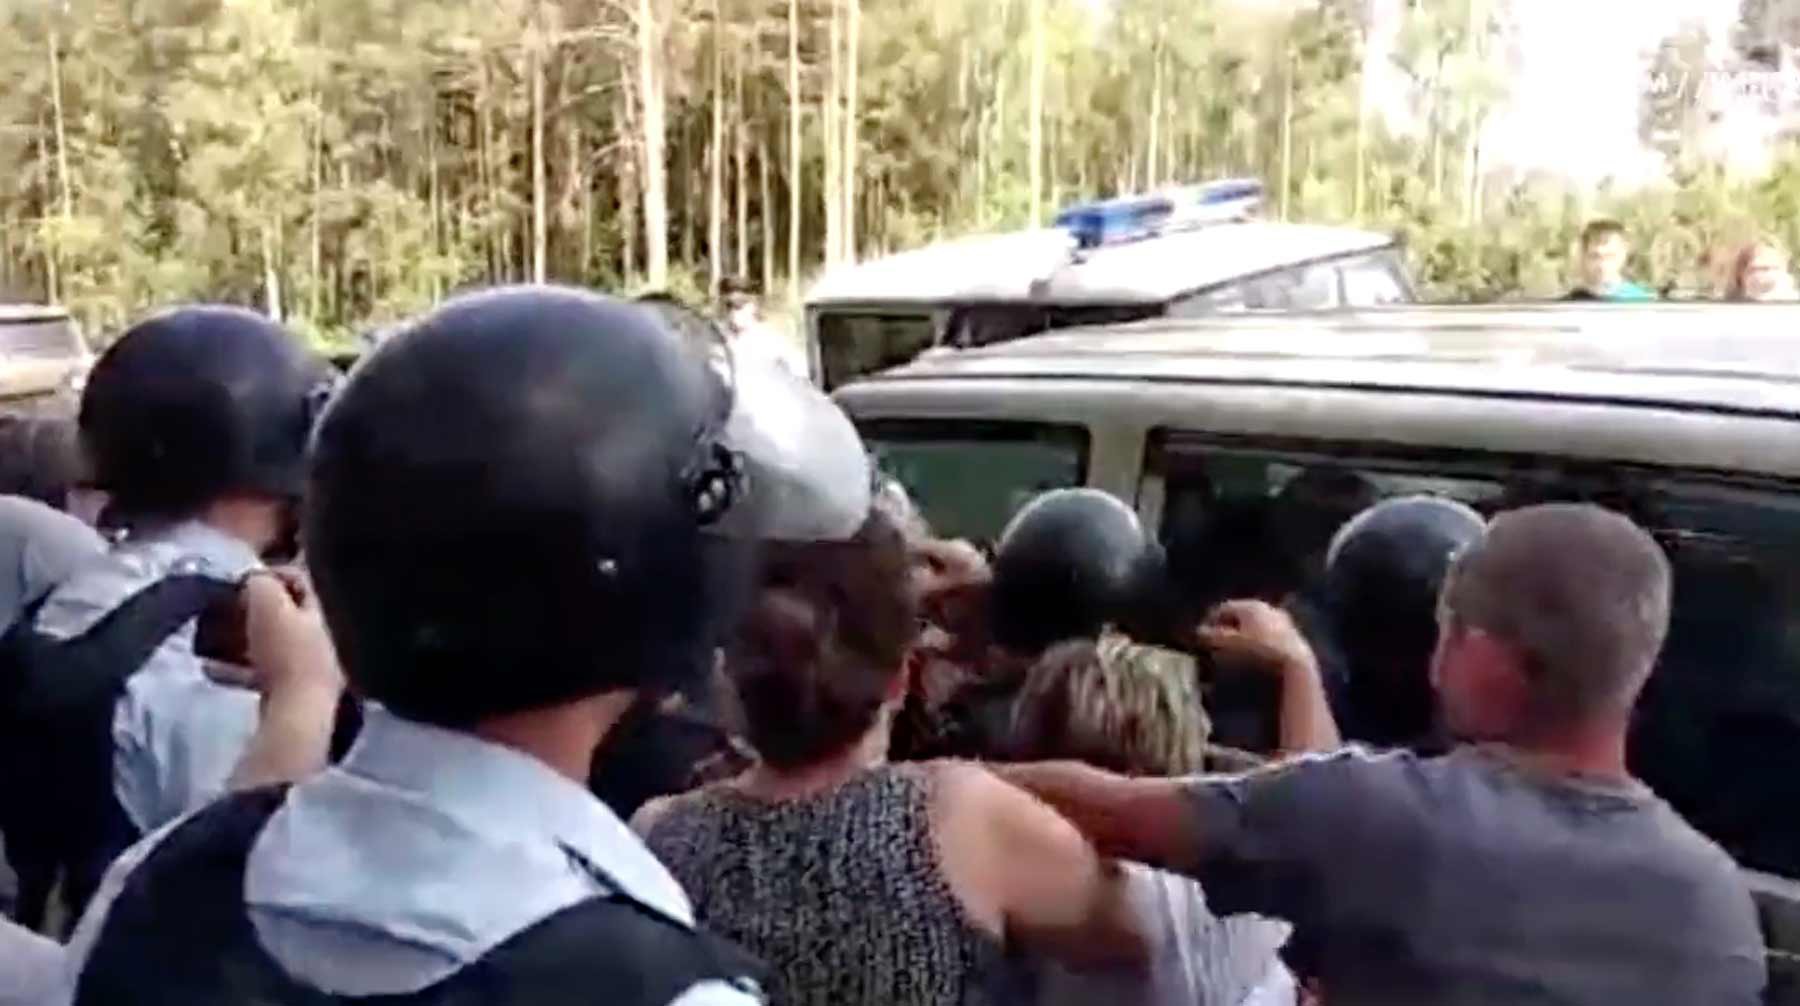 Dailystorm - «Нас бьют!»: активисты в Ликино-Дулеве рассказали о драке с правоохранителями и задержаниях